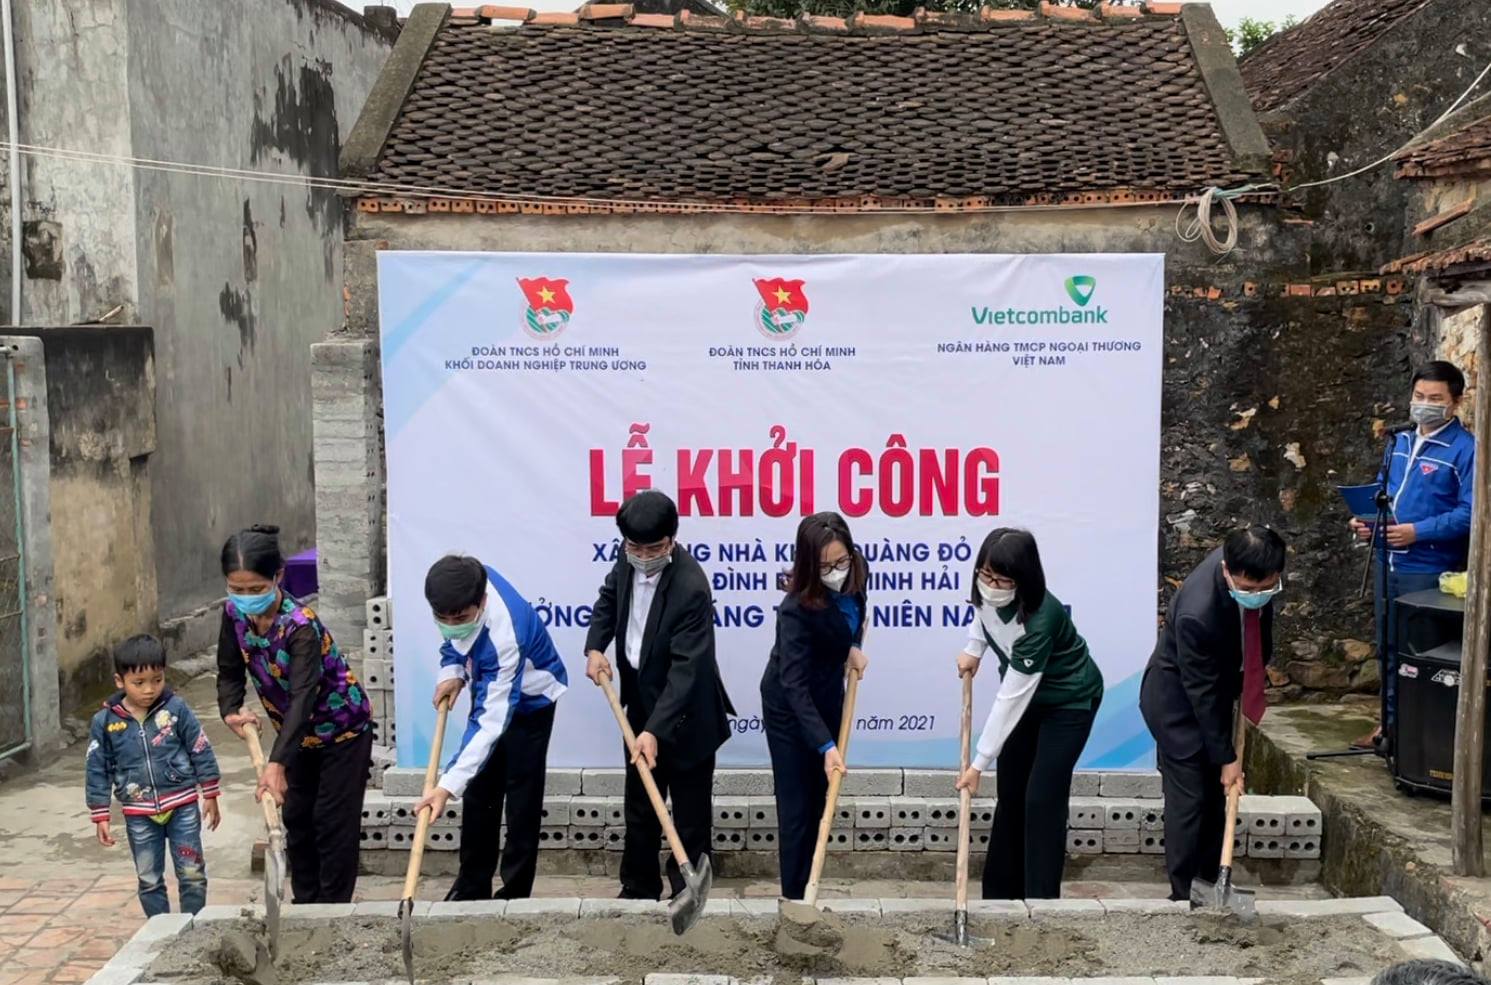 Lễ khởi công xây dựng nhà Khăn quàng đỏ tặng gia đình em Đỗ Minh Hải tại xã Cầu Lộc, huyện Hậu Lộc, tỉnh Thanh Hóa